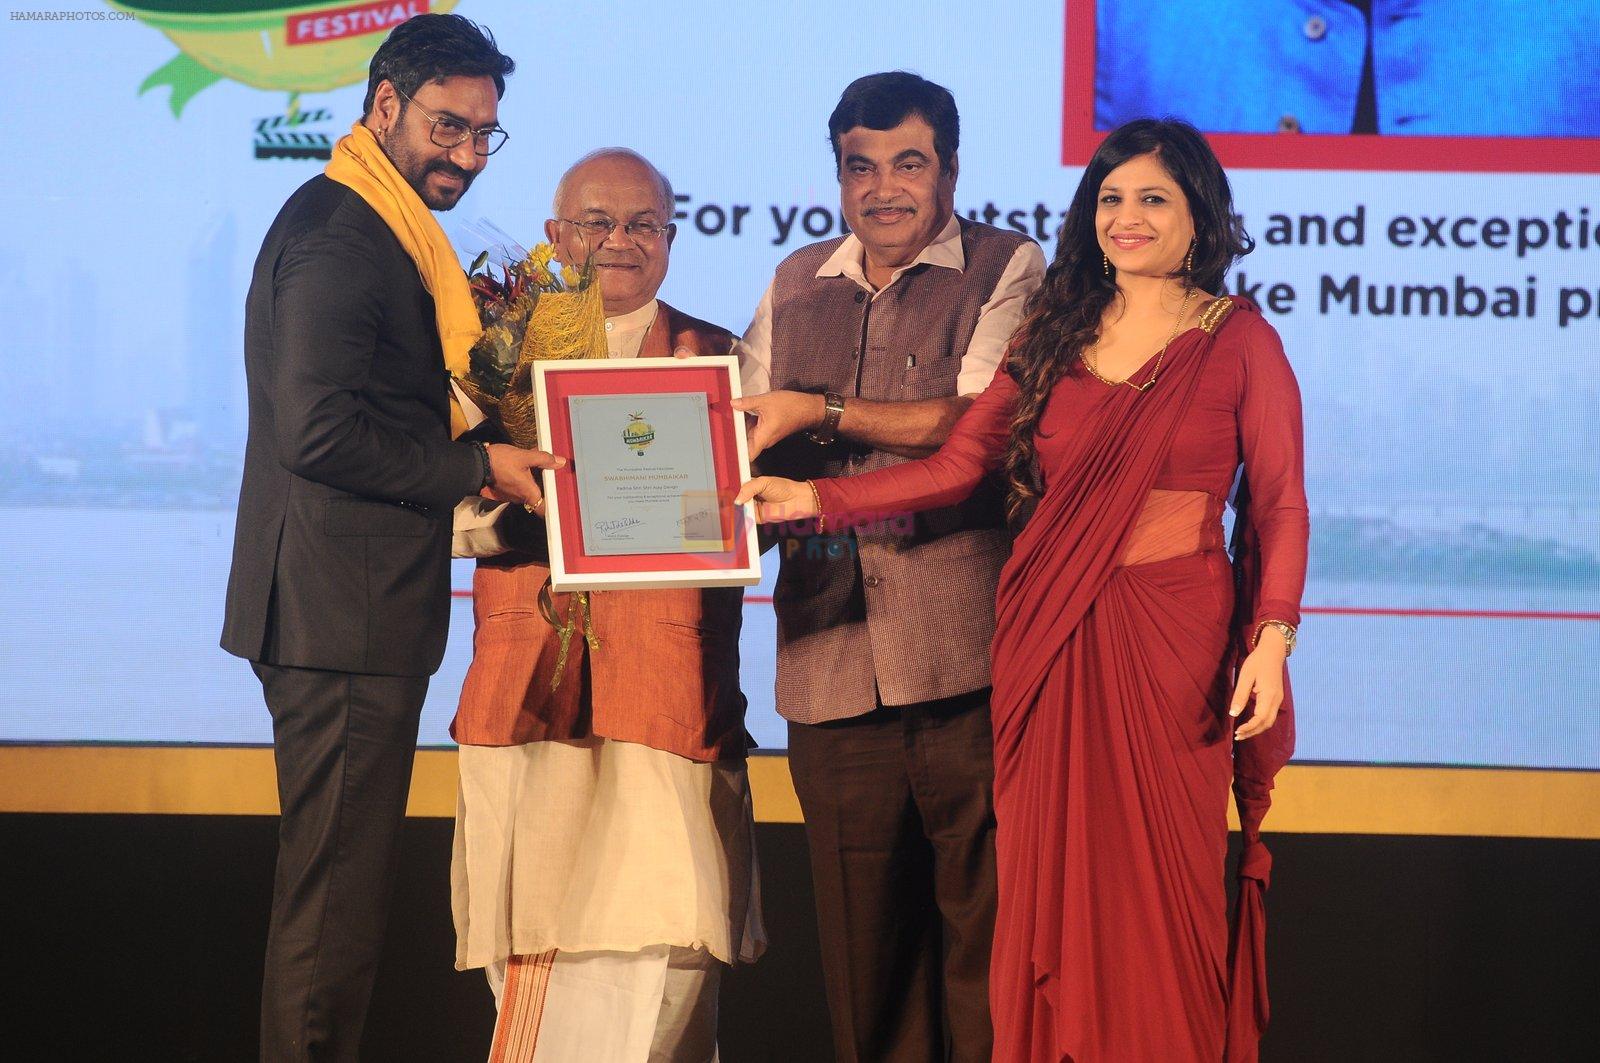 Ajay Devgan at Swabhiman Mumbaikar event to honour Padmabhushan winners on 3rd June 2016